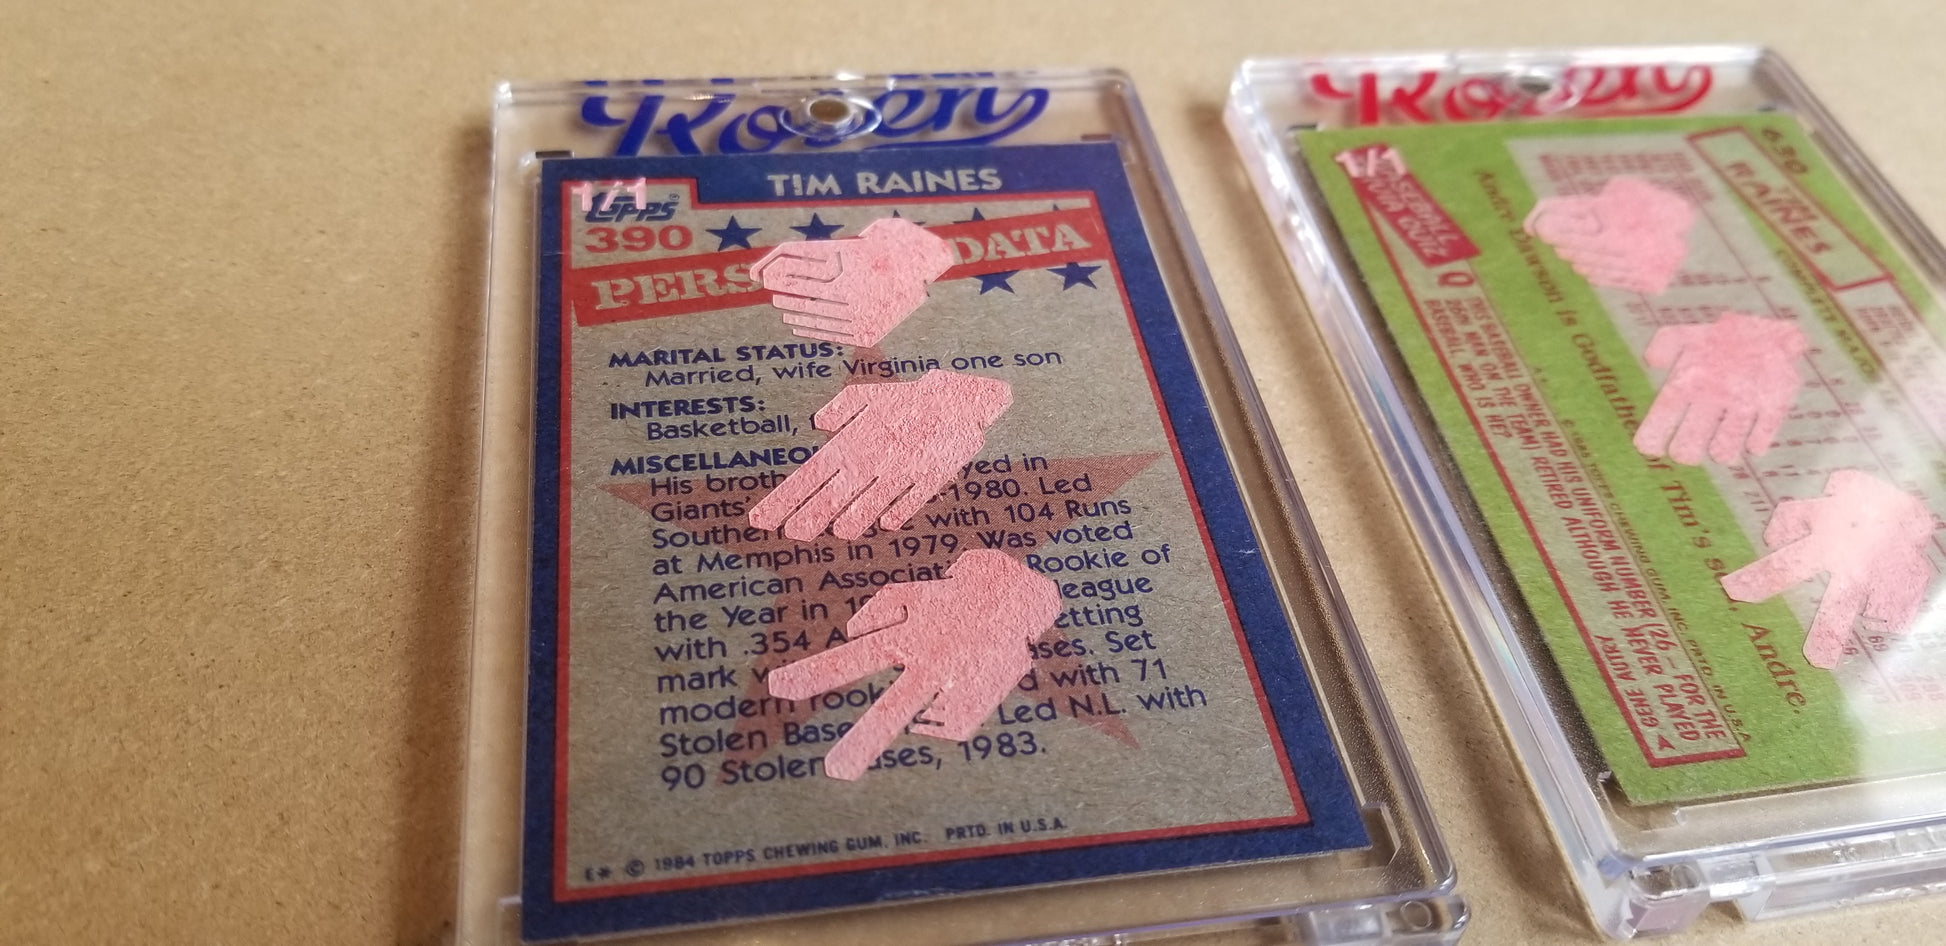 Baseball card art by Matthew Lee Rosen (aka Matthew Rosen) - Gum Stick Collector Cards - Tim Raines (Rock, Paper, Scissors)